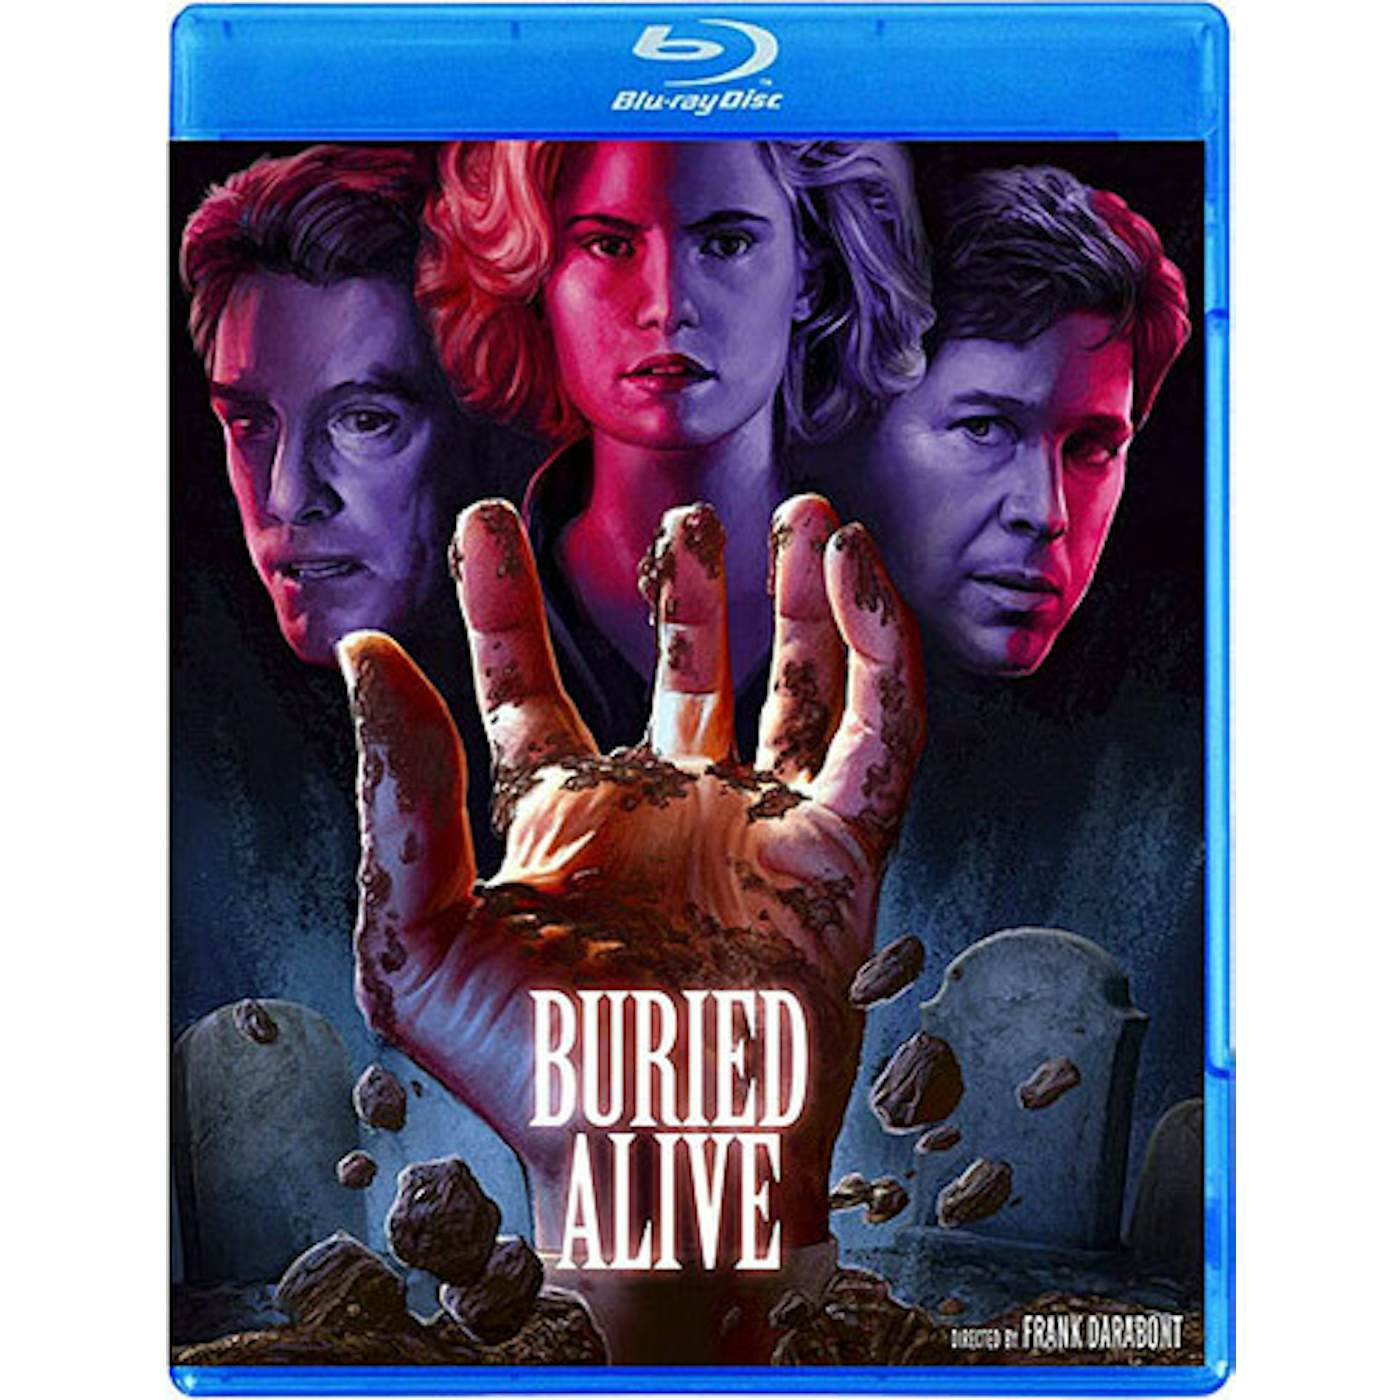 BURIED ALIVE (1990) Blu-ray